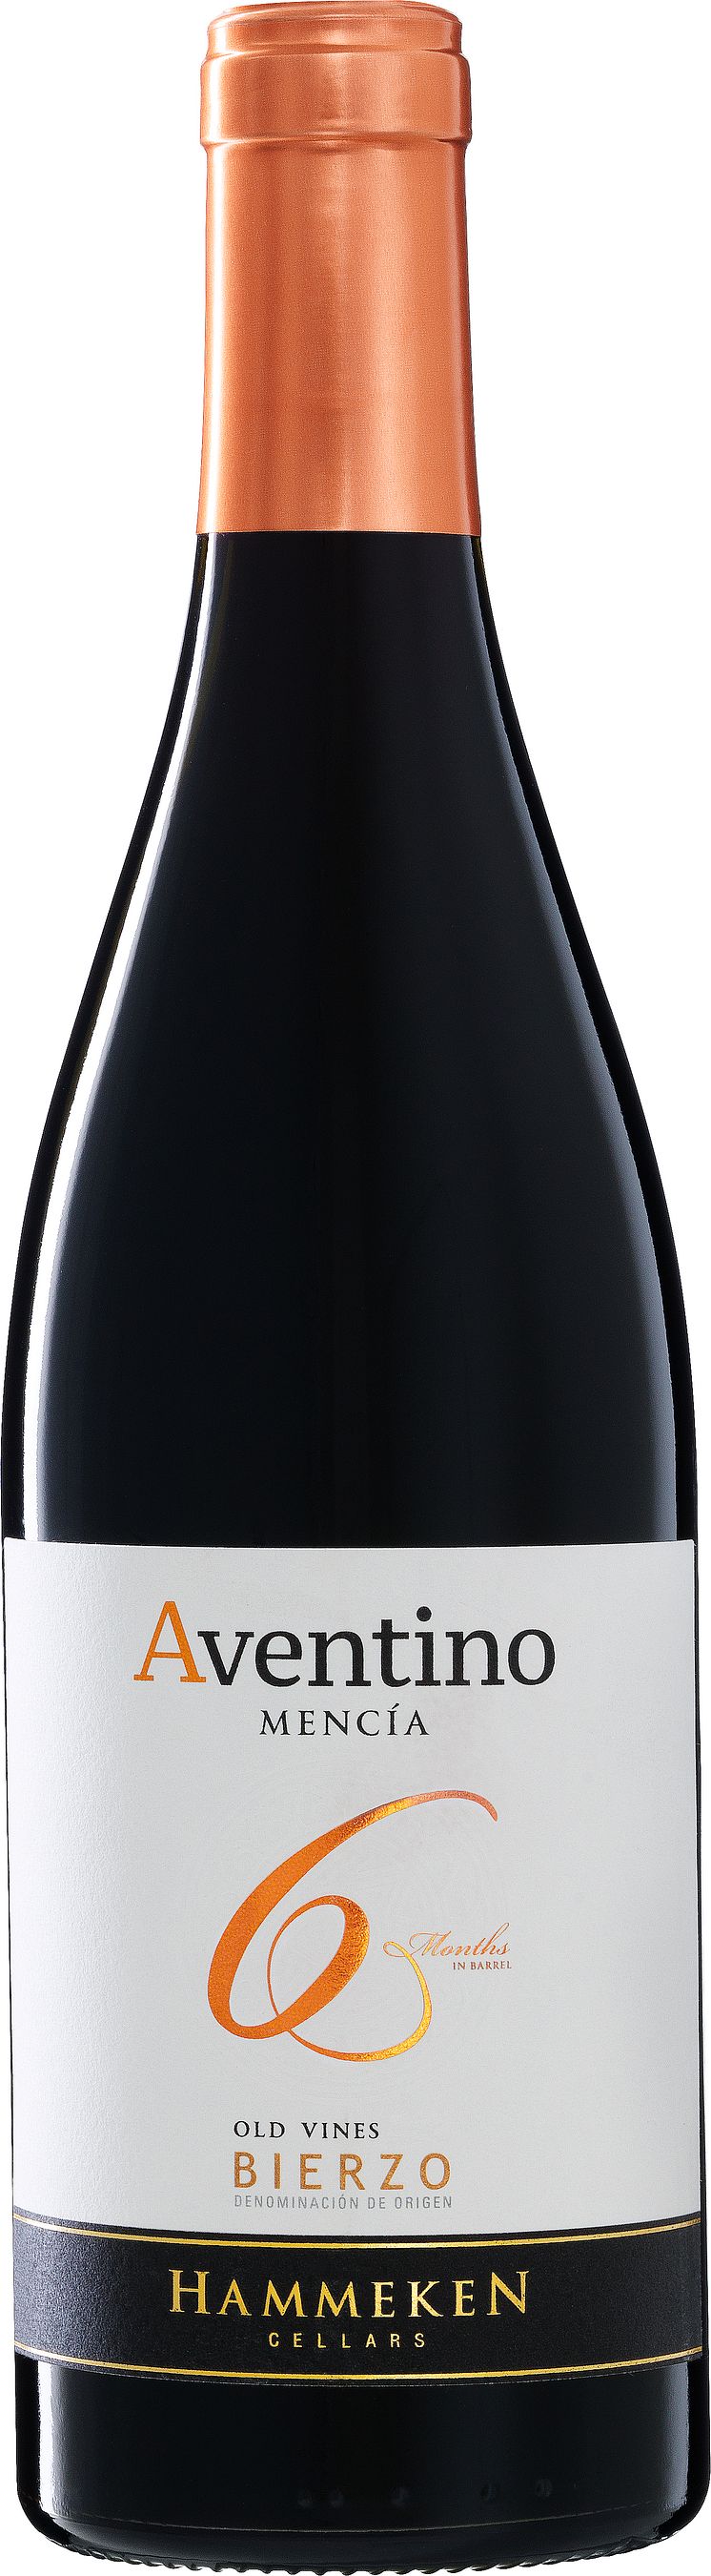 Aventino Old Vines Mencia